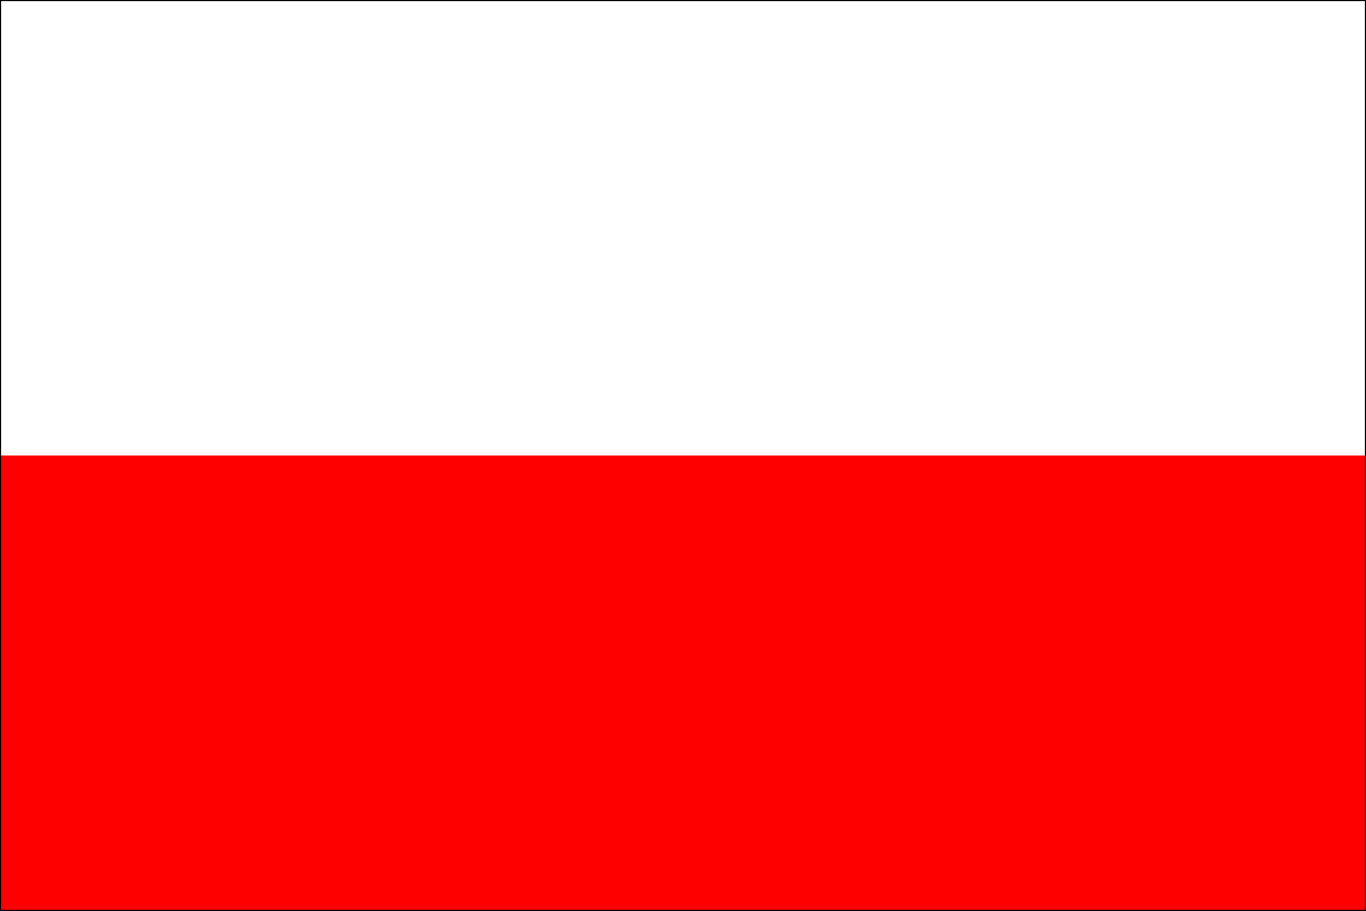 Obrázek vlajky města Tachov v rozlišení 1366x911 Plzeňský kraj Tachovská vlajka 